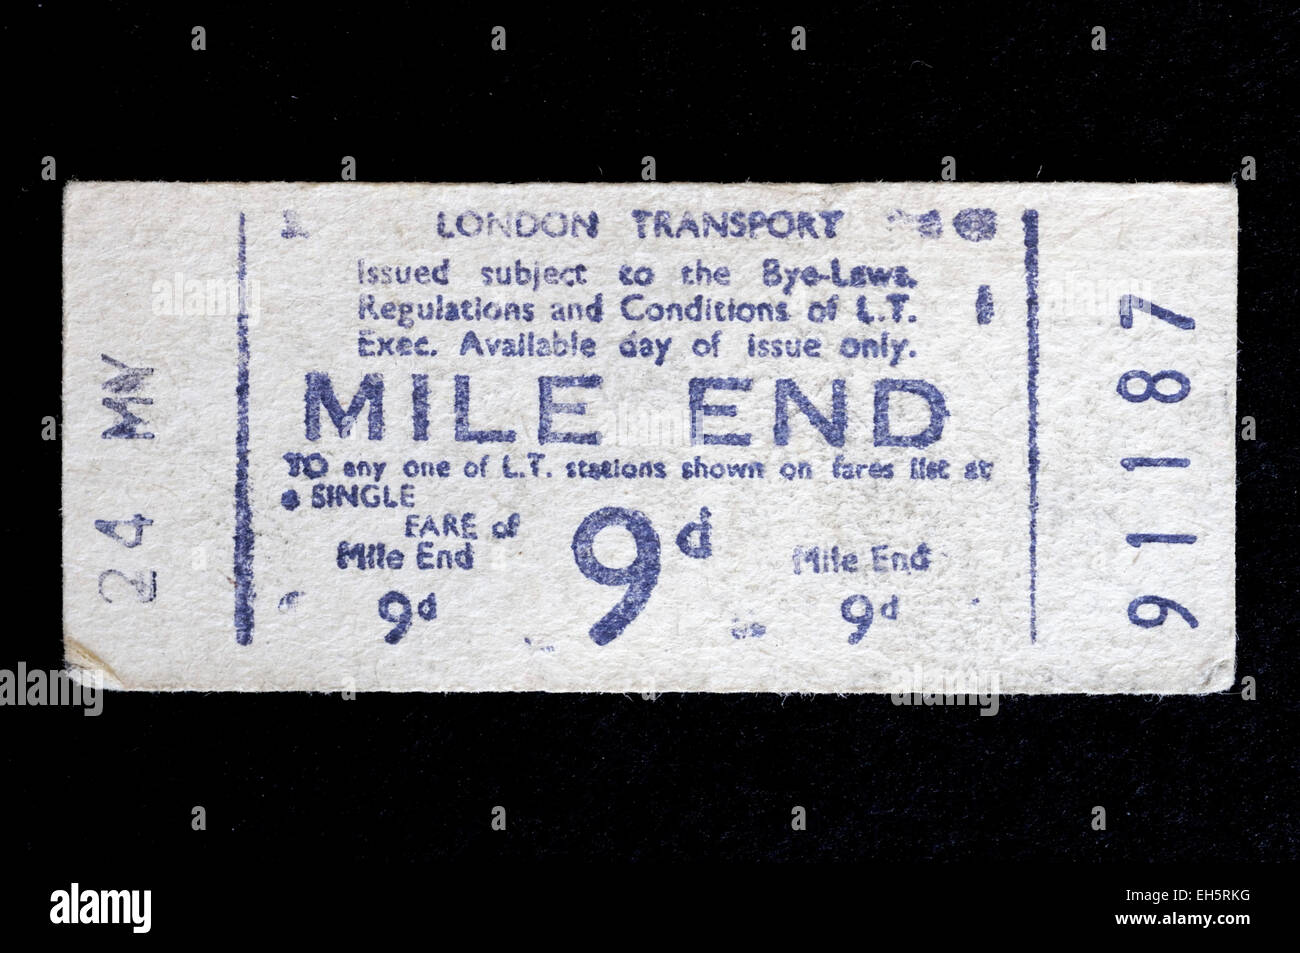 Alte gebrauchte London Transport u-Bahn Ticket gekauft bei Mile End Station und kostet 9d - neun alten Pence oder Pfennige England Brita Stockfoto